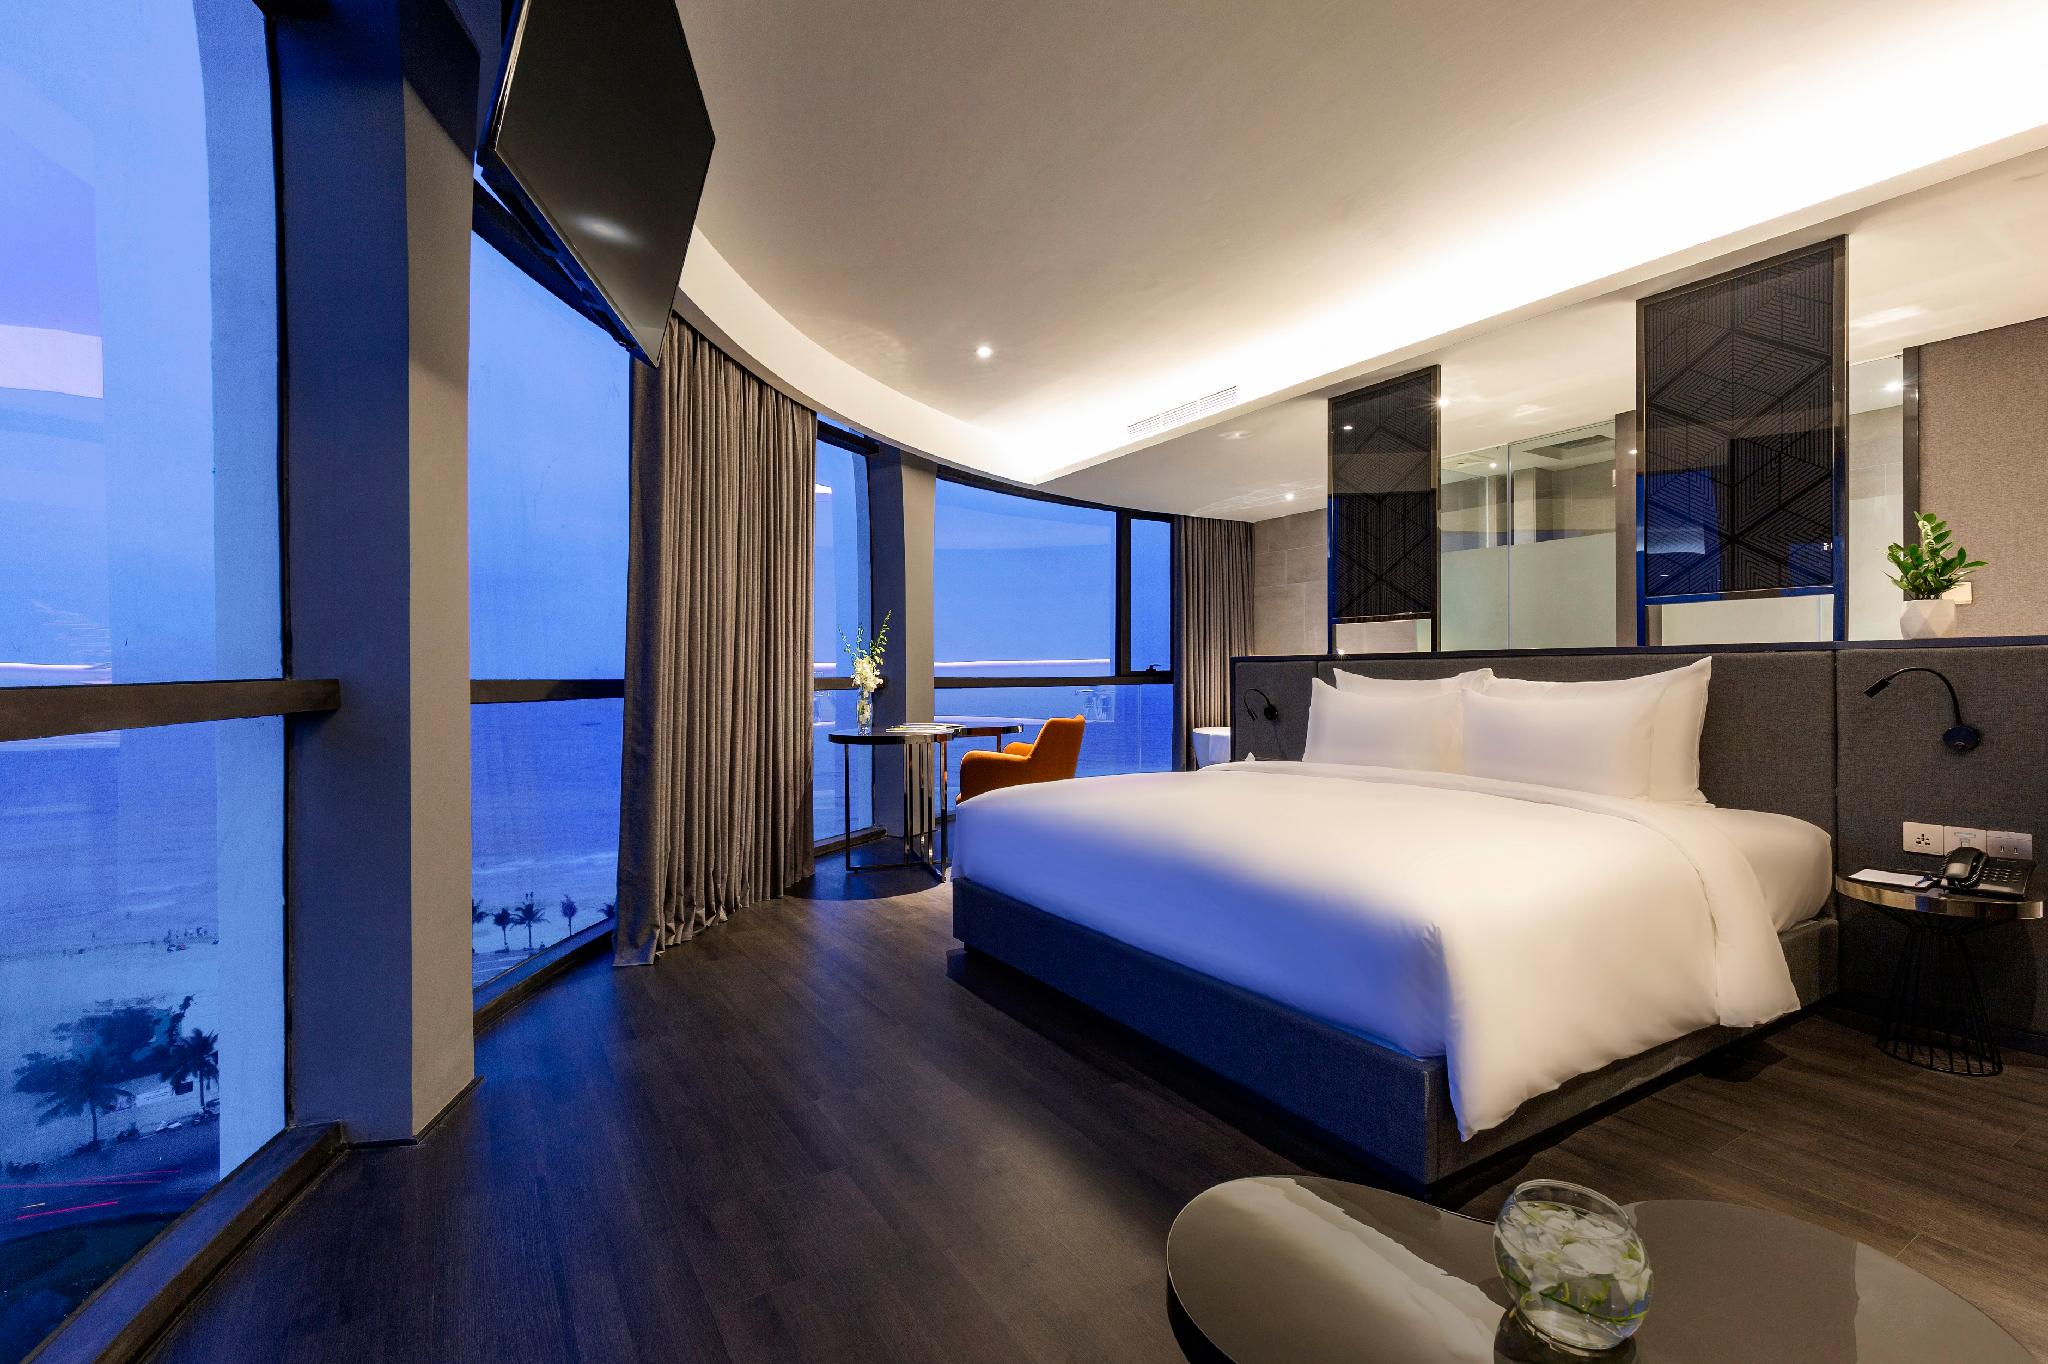 stella maris da nang - Top 10 khách sạn đẹp nhất ở Đà Nẵng được nhiều du khách lựa chọn